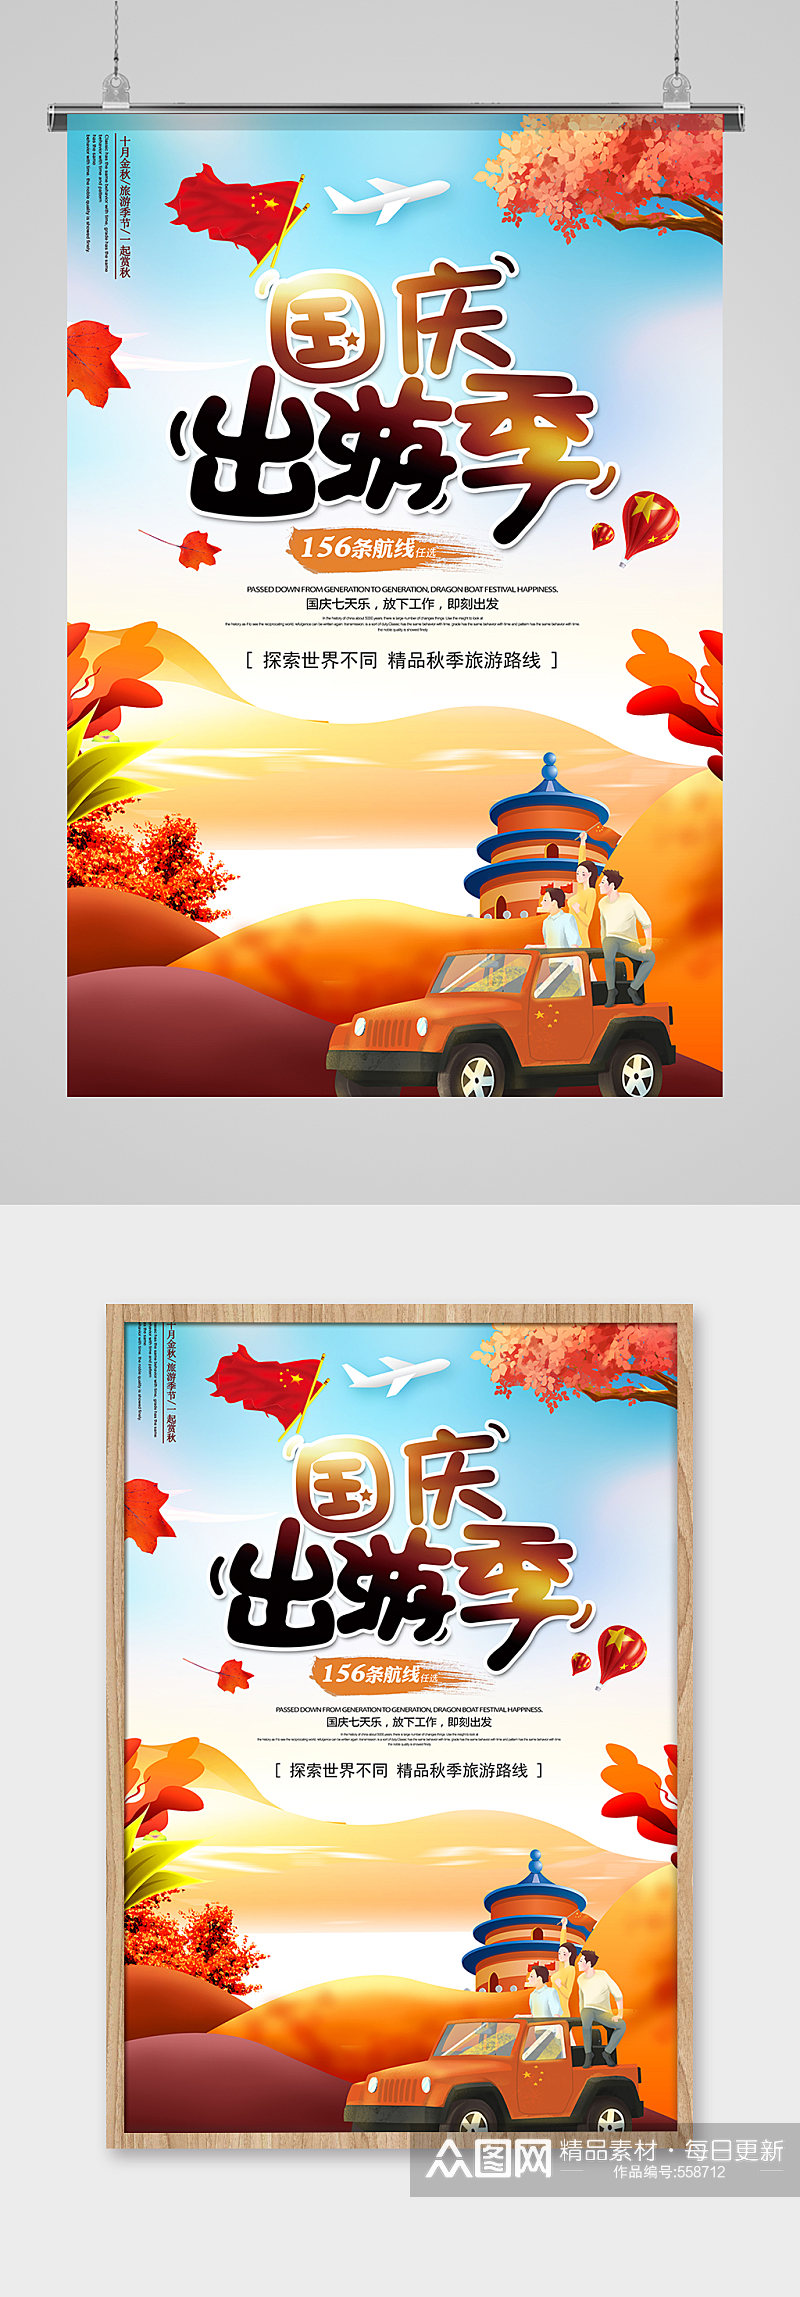 国庆出游季旅行社海报设计素材